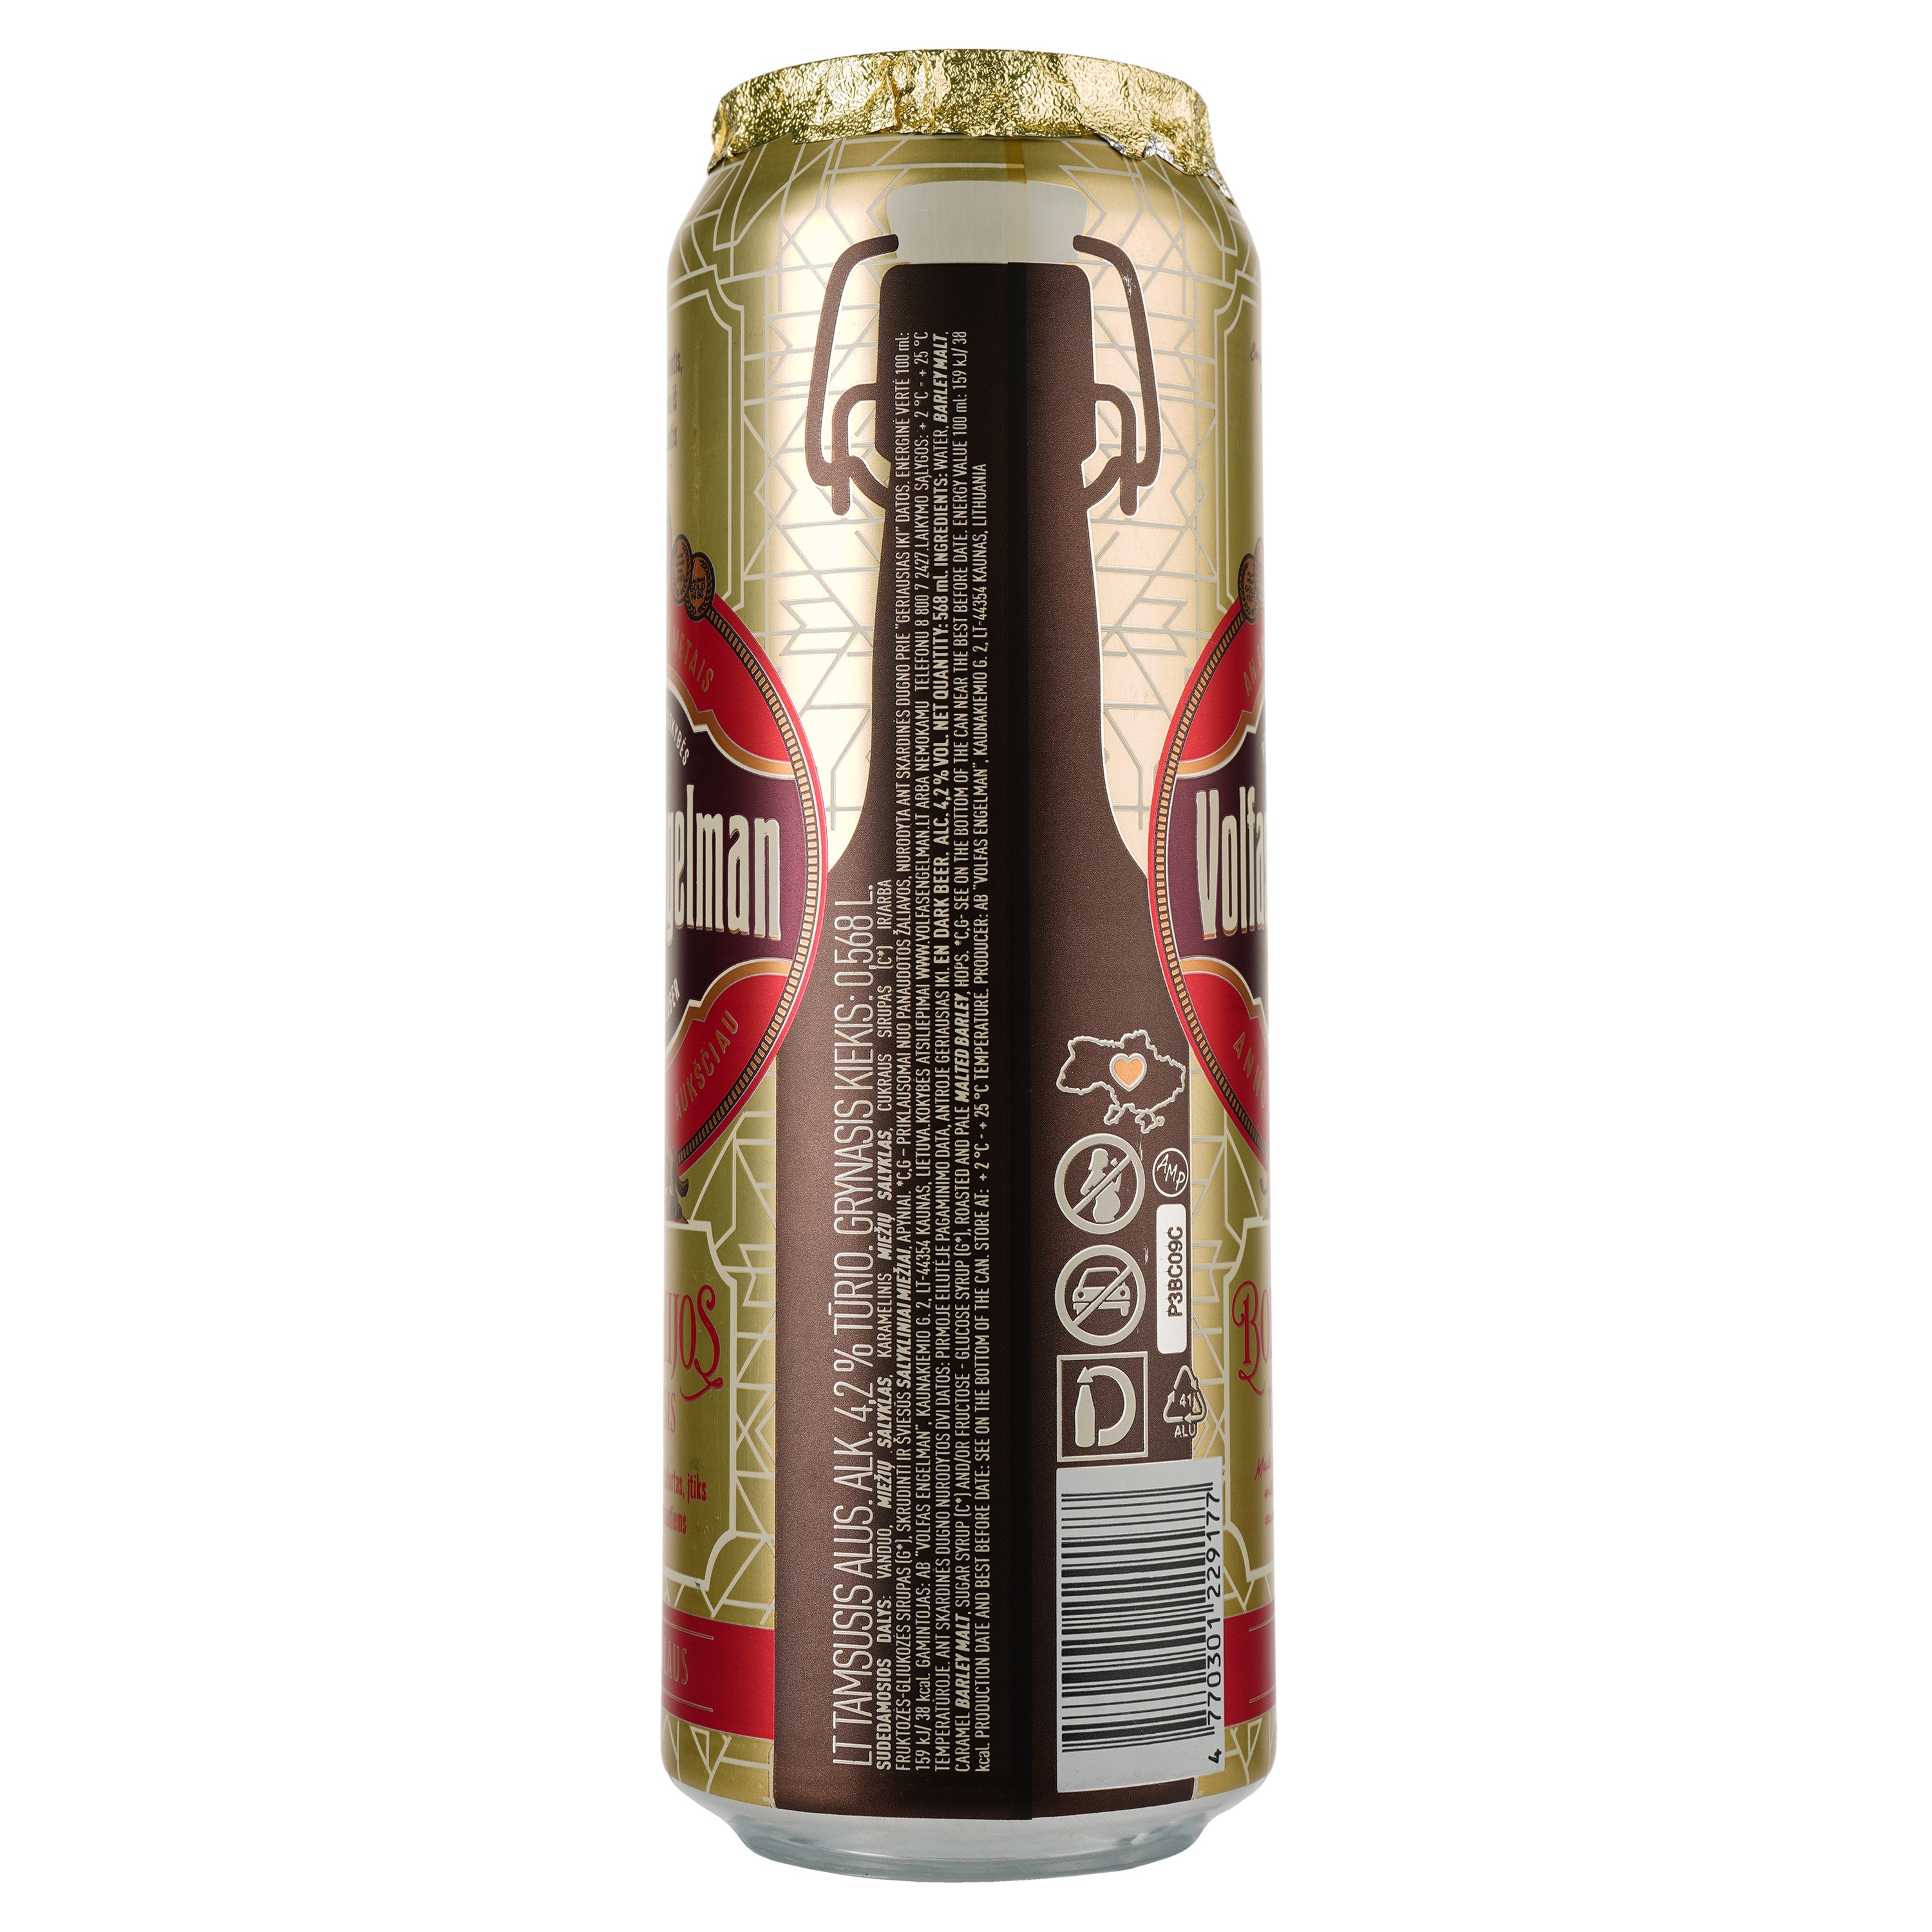 Пиво Volfas Engelman Bohemijos Dark темне, 4.2%, з/б, 0.568 л - фото 2